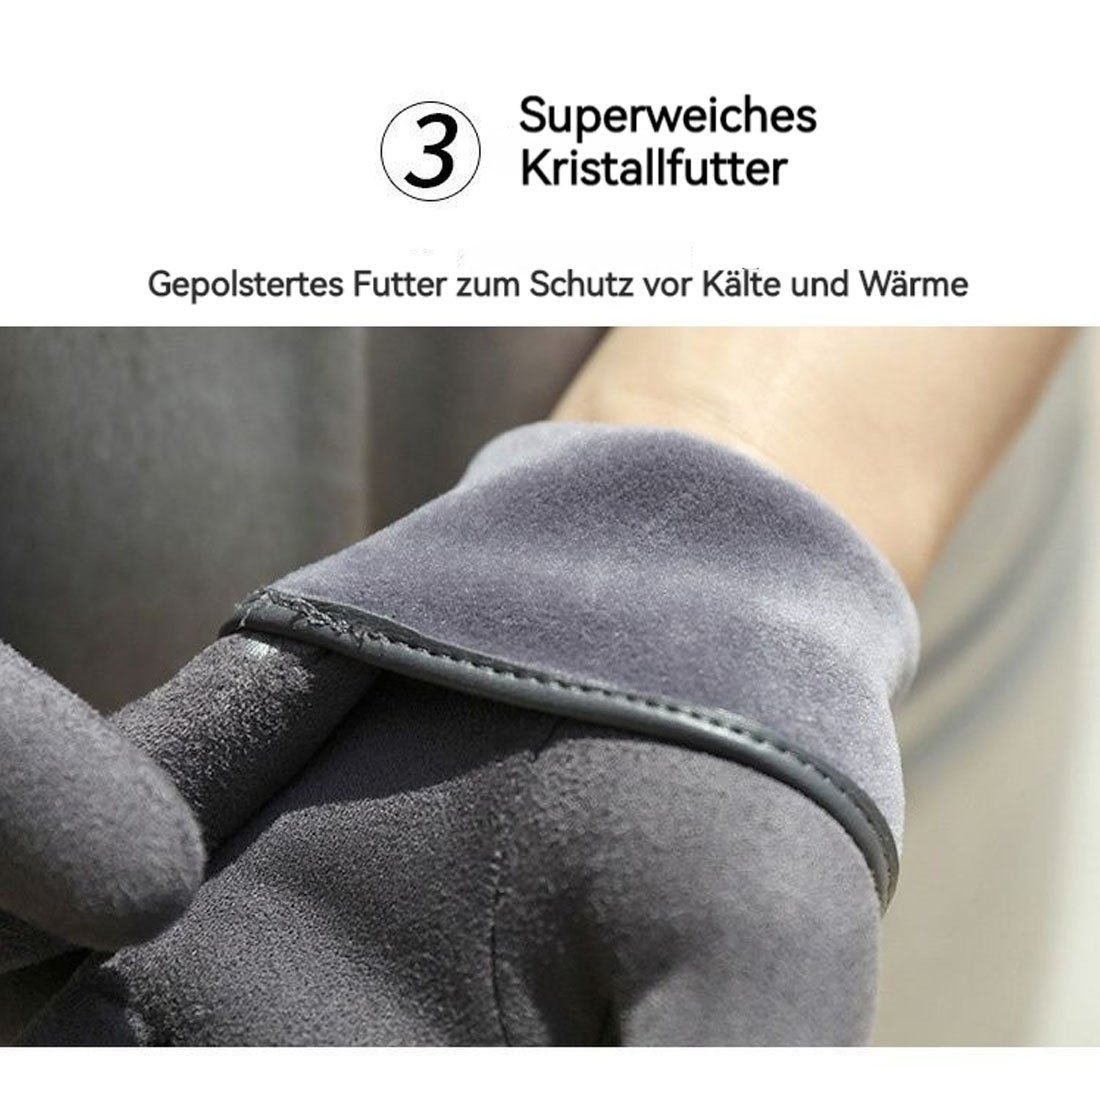 Wintermode Handschuhe, Damen DÖRÖY gepolsterte warme Fleecehandschuhe Touchscreen-Handschuhe Grau